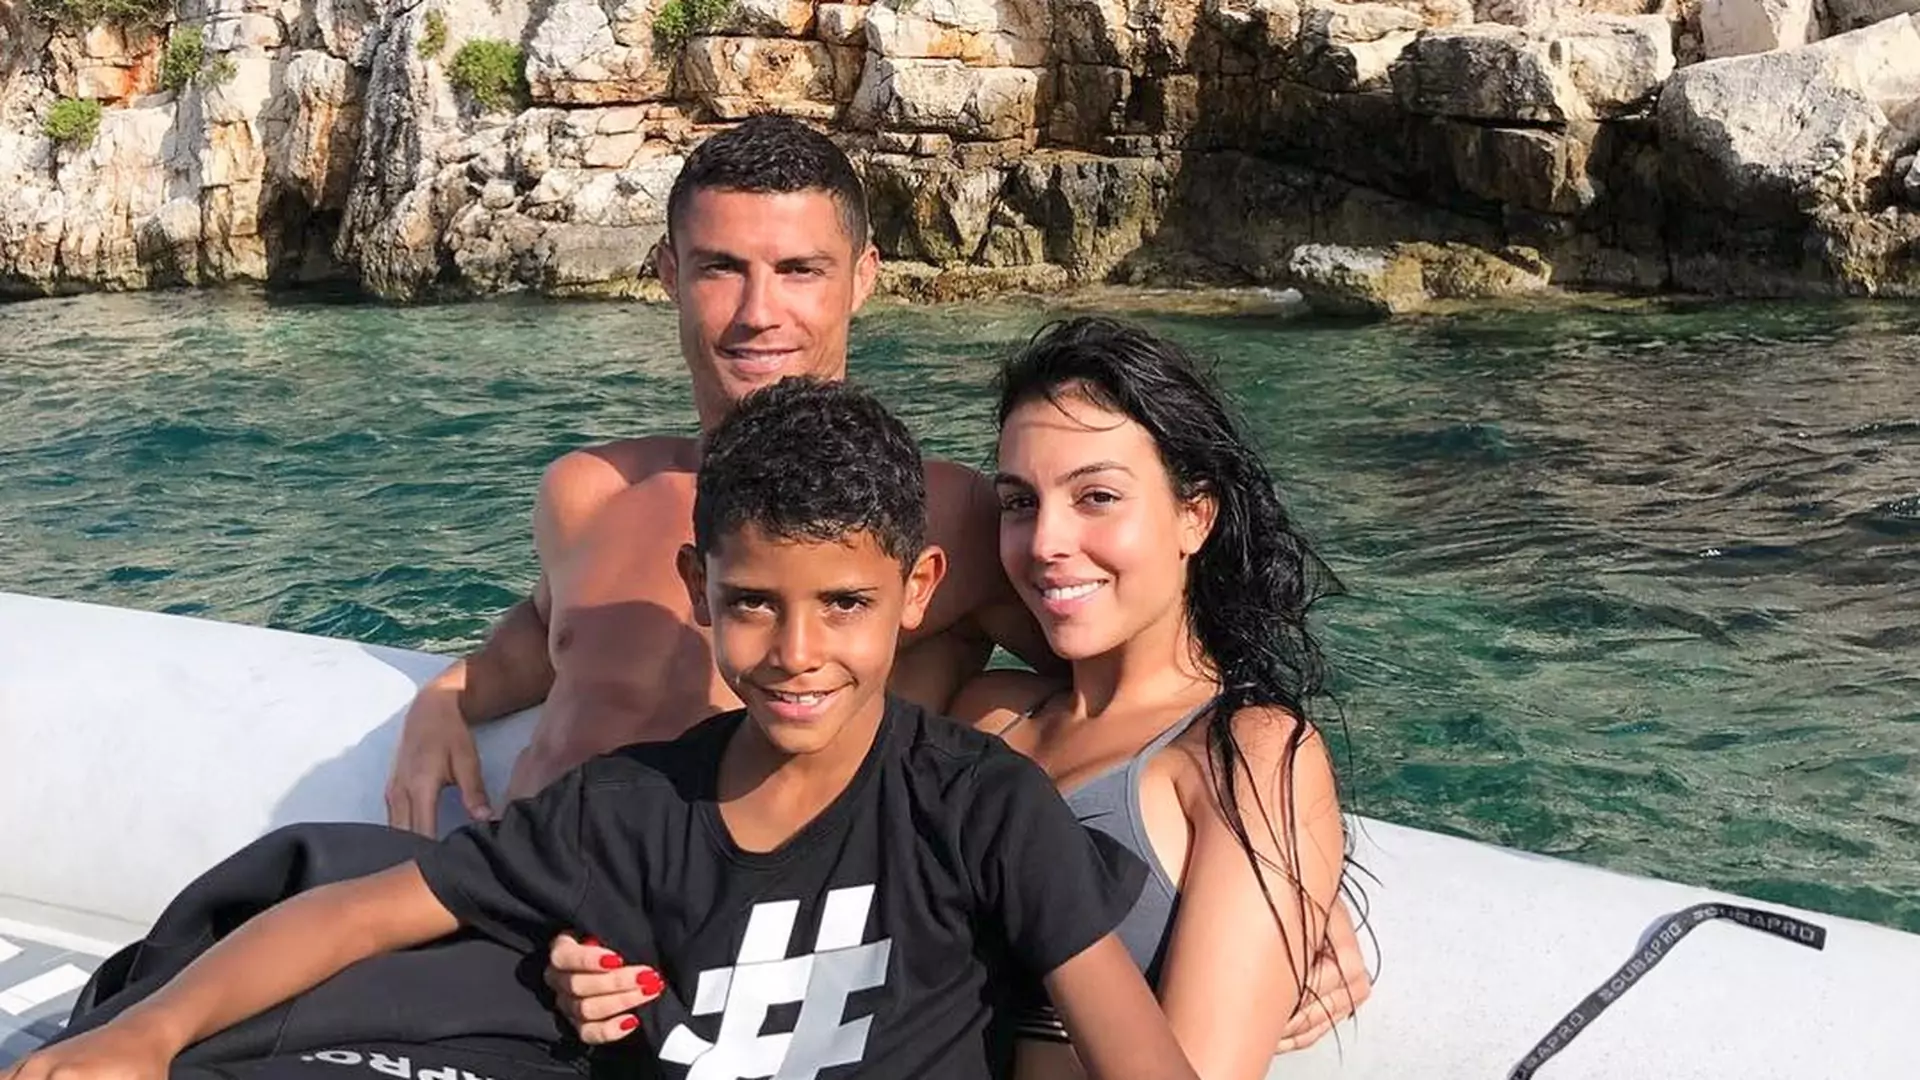 Cristiano Ronaldo zostawił obsłudze hotelu 18 tys. funtów napiwku podczas urlopu